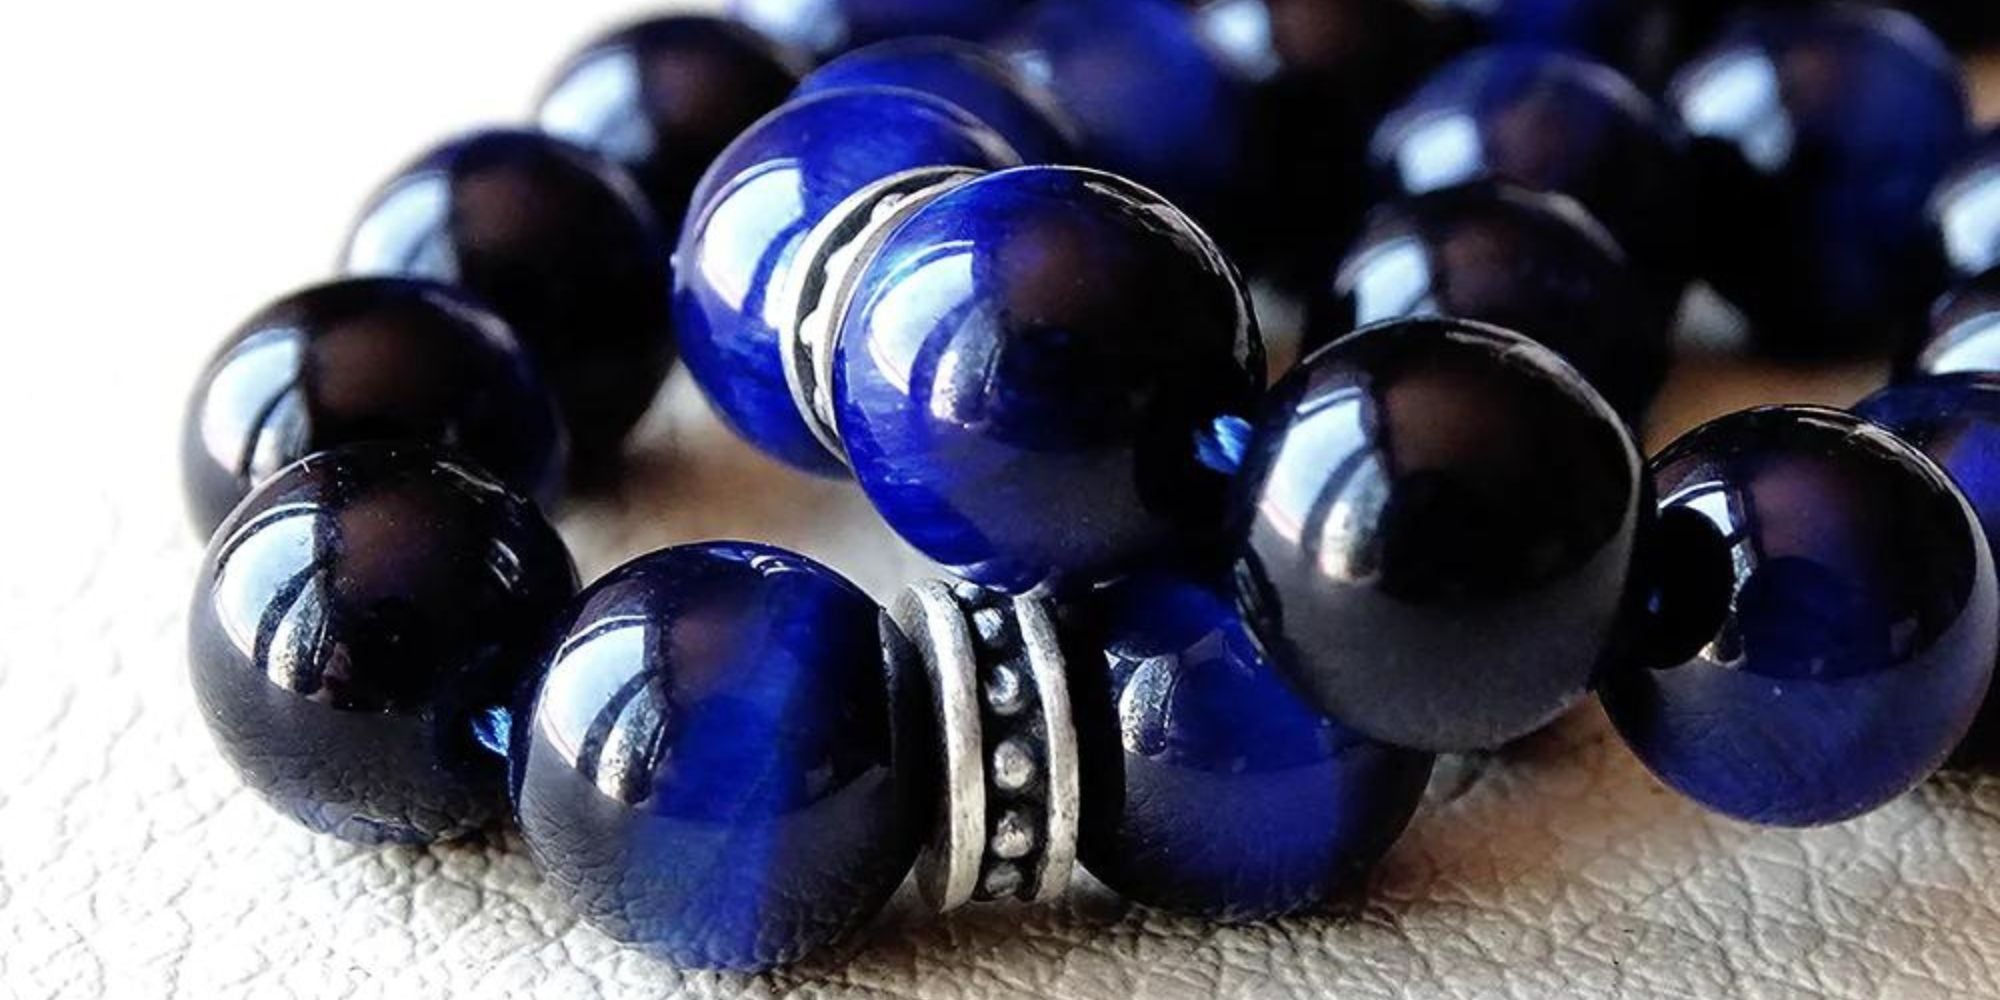 Bracelet Quartz Bleu - Vertus des Pierres - Lithothérapie